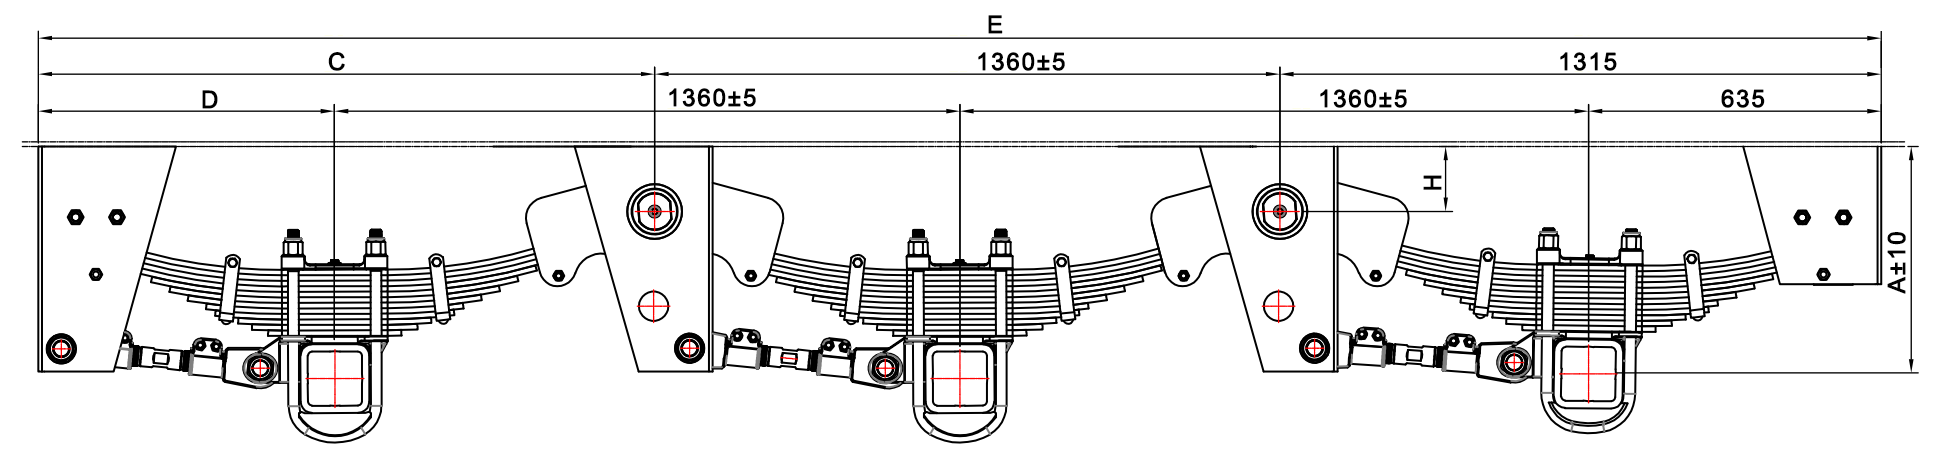 BPW 3-Axle type suspension